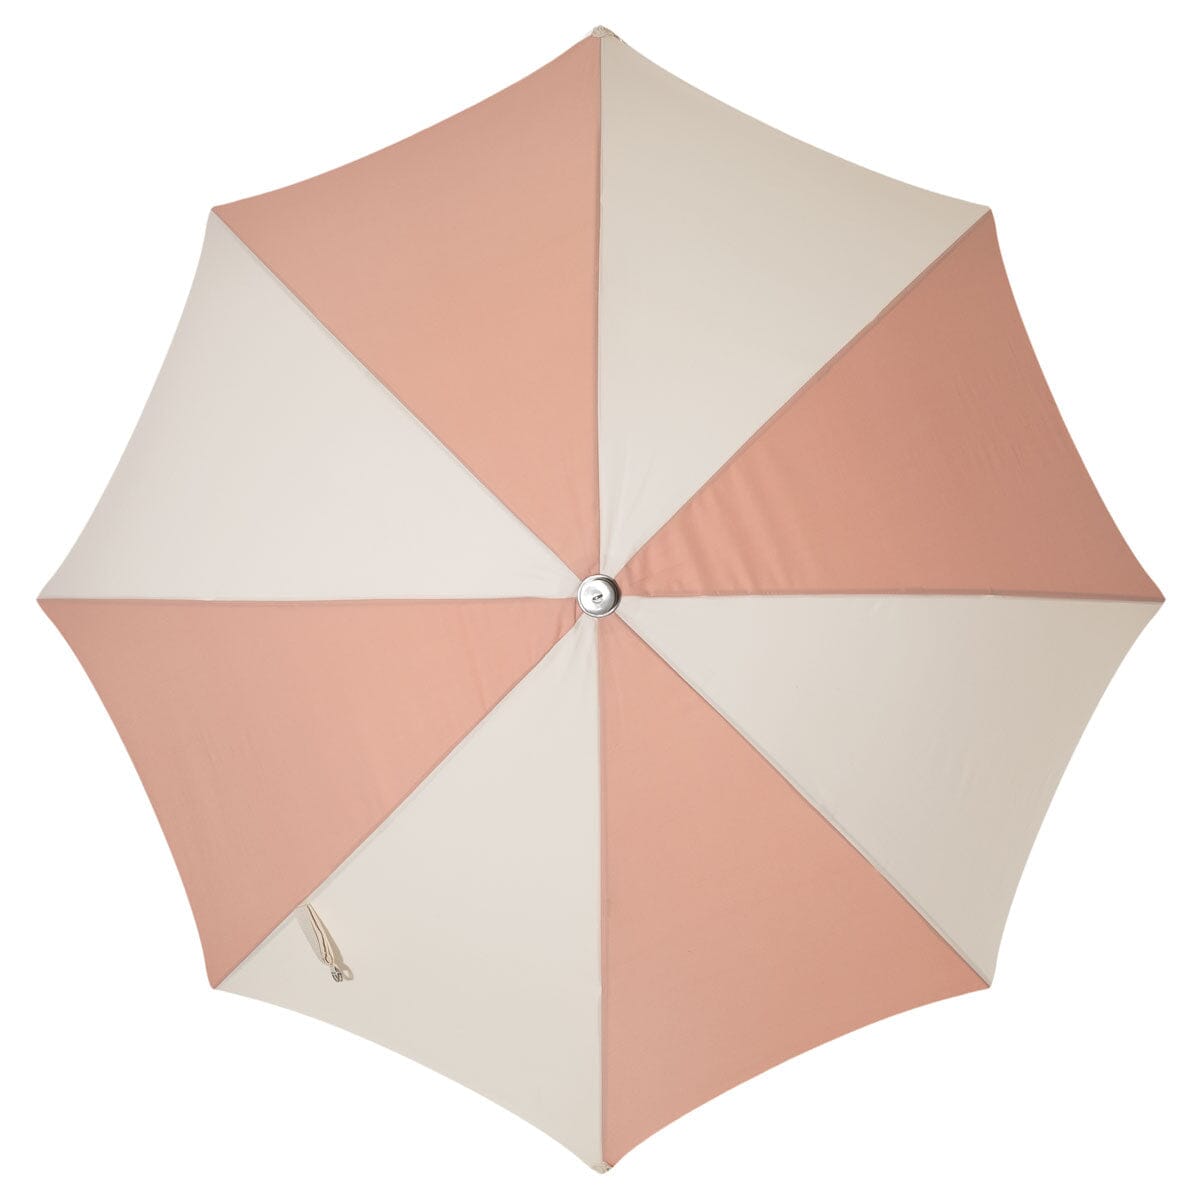 The Premium Beach Umbrella - 70's Panel Pink